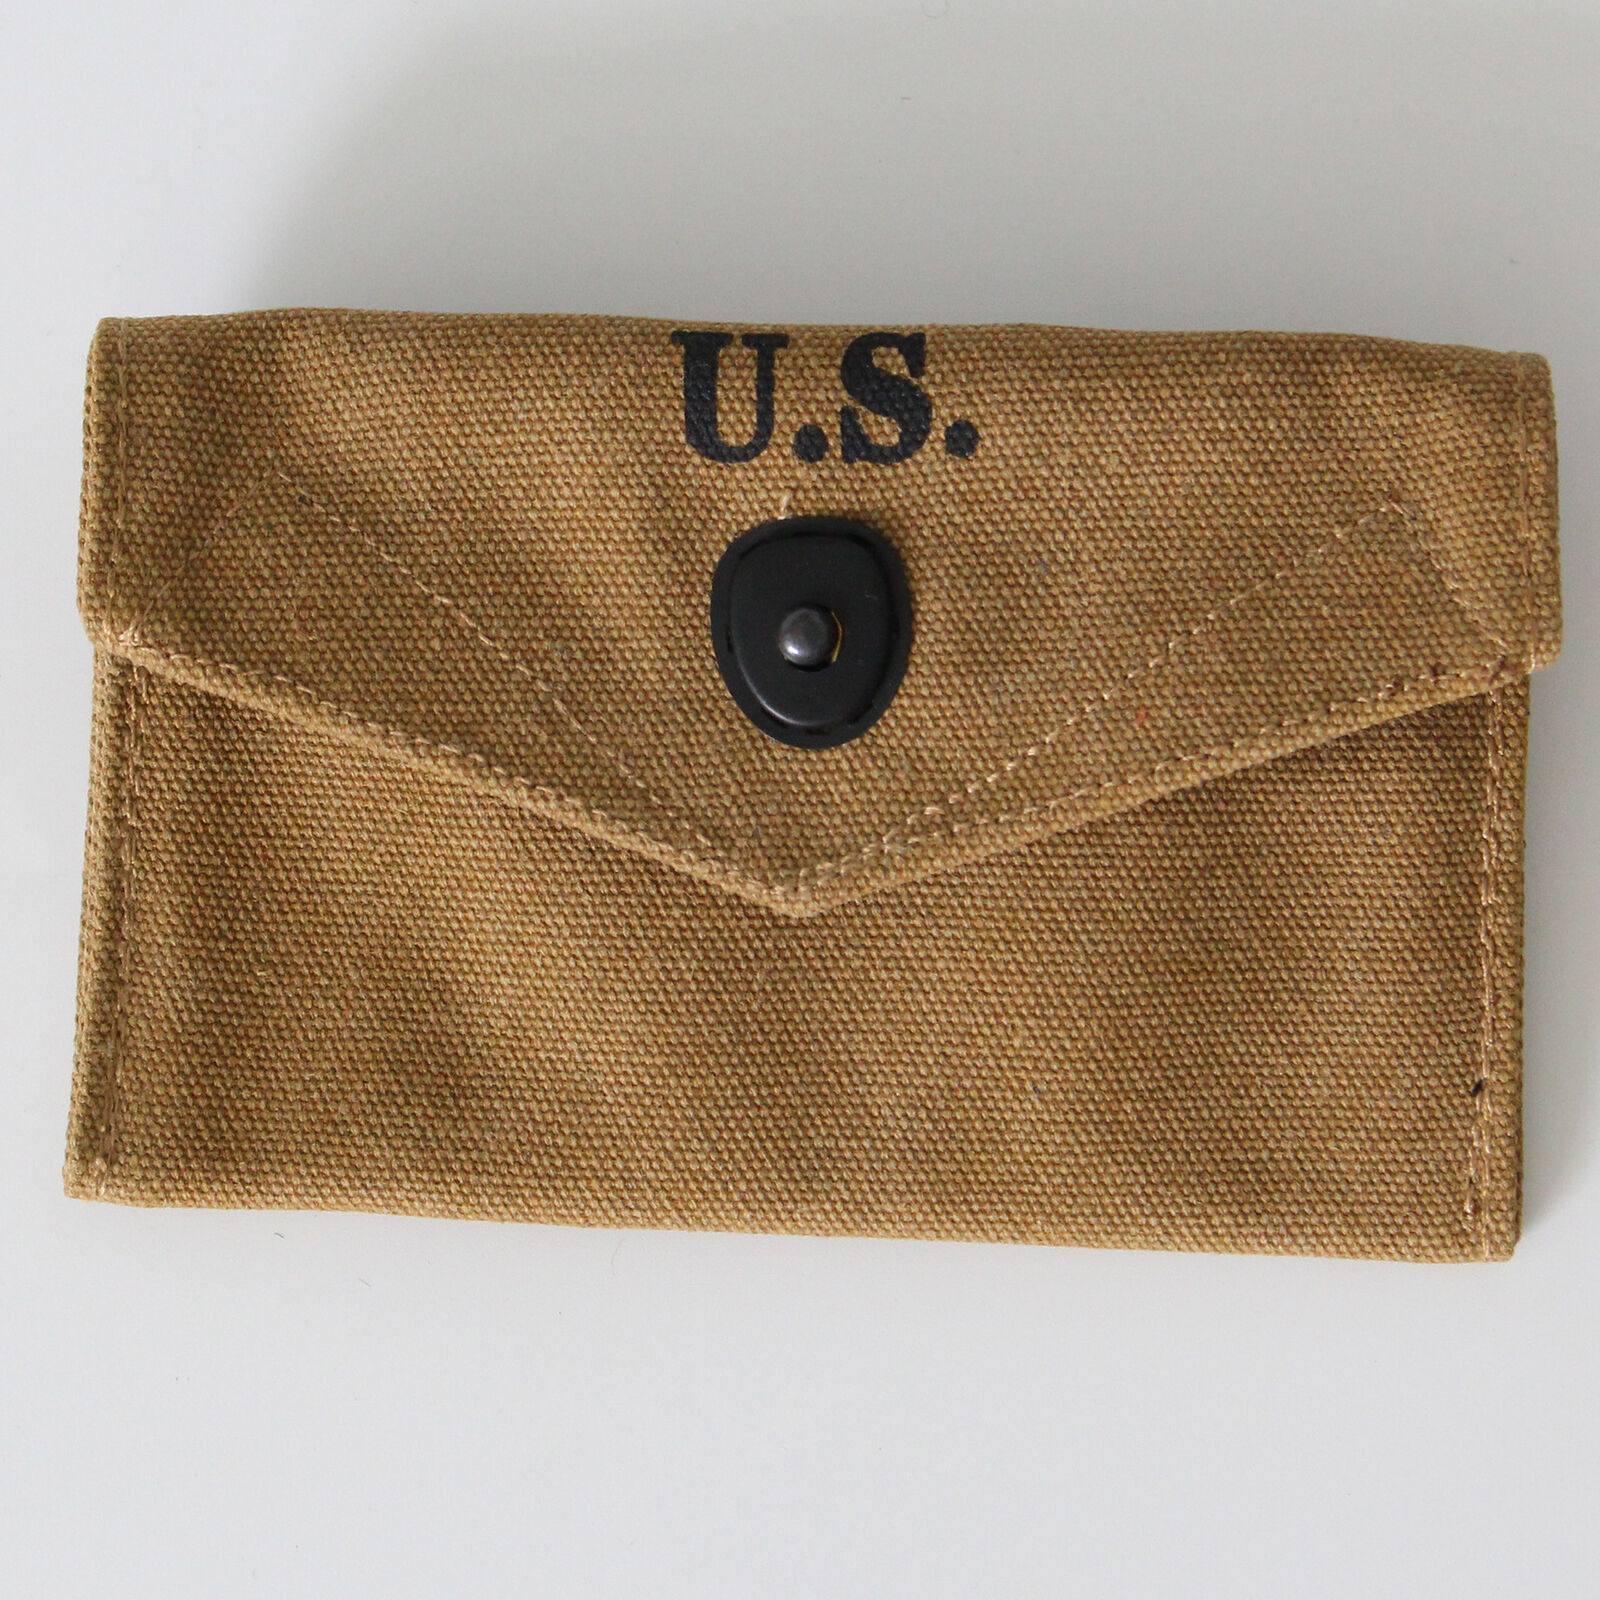 WW2 US M1 First Aid Pouch Bag Khaki Canvas